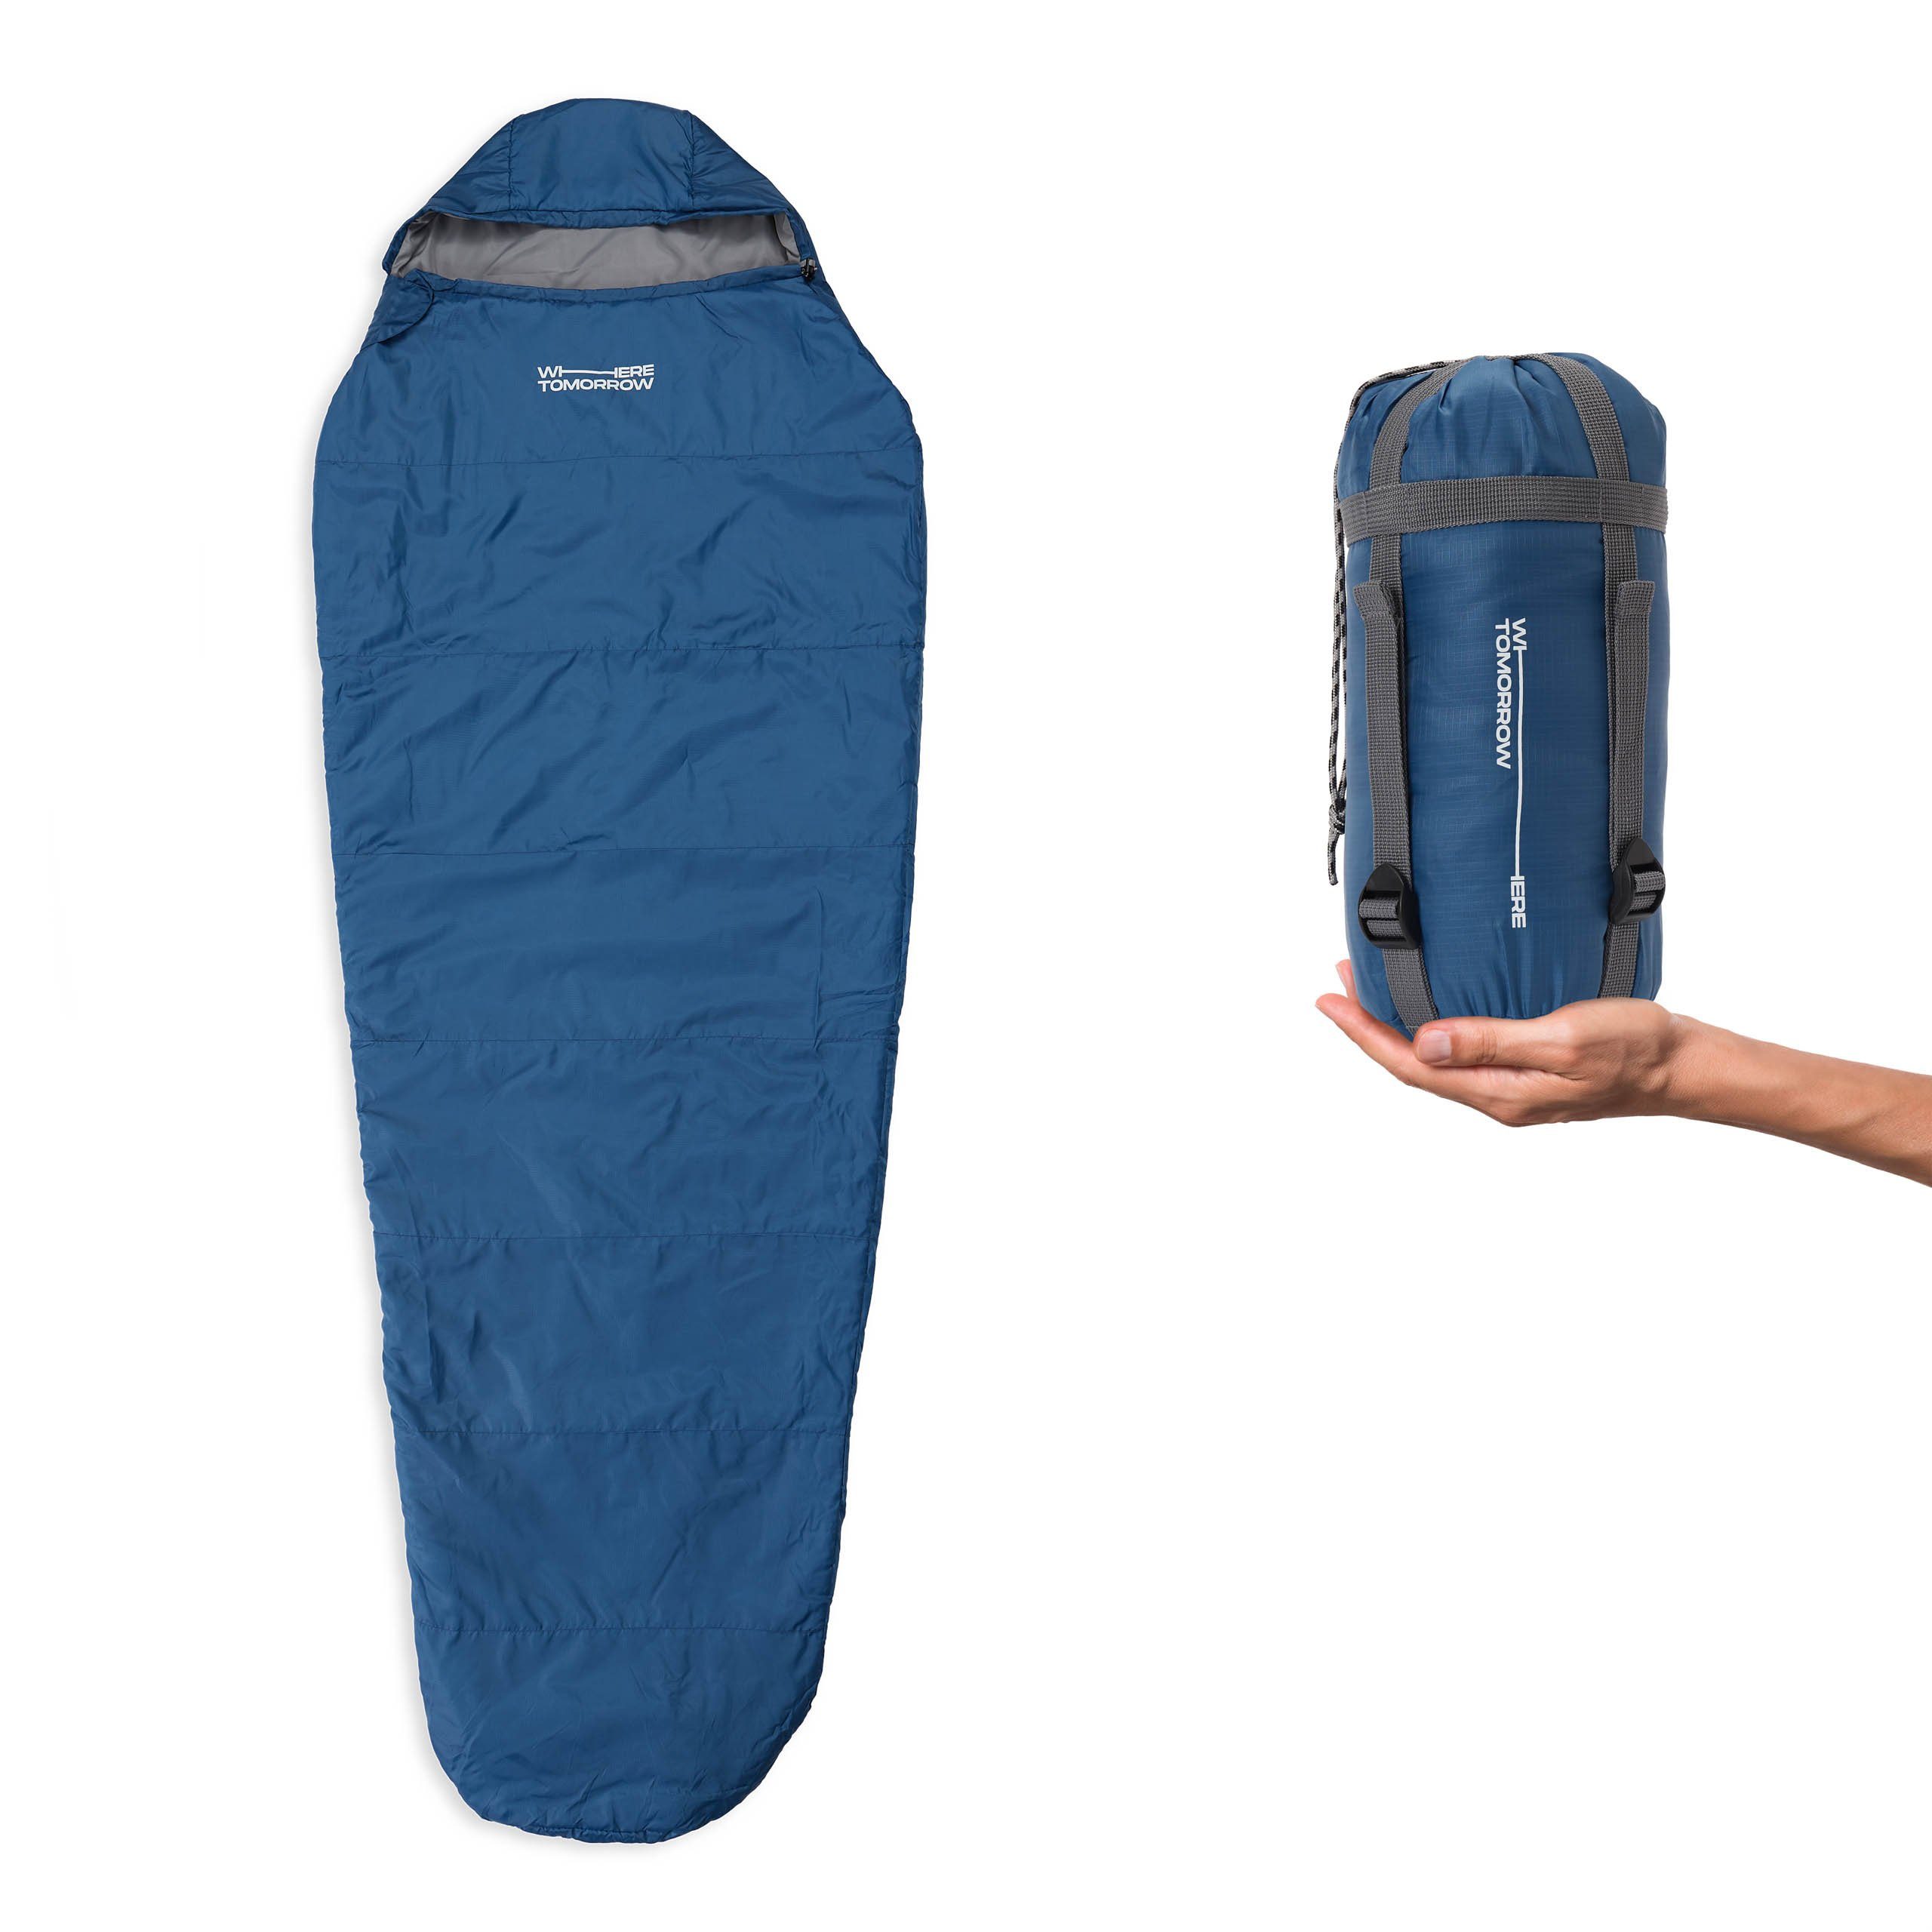 Lumaland Mumienschlafsack Camping 220x80x50, Schulterbereich royalblau wasserabweisend -5°C Where Outdoor Camping Wärmekragen im Schlafsack Tomorrow